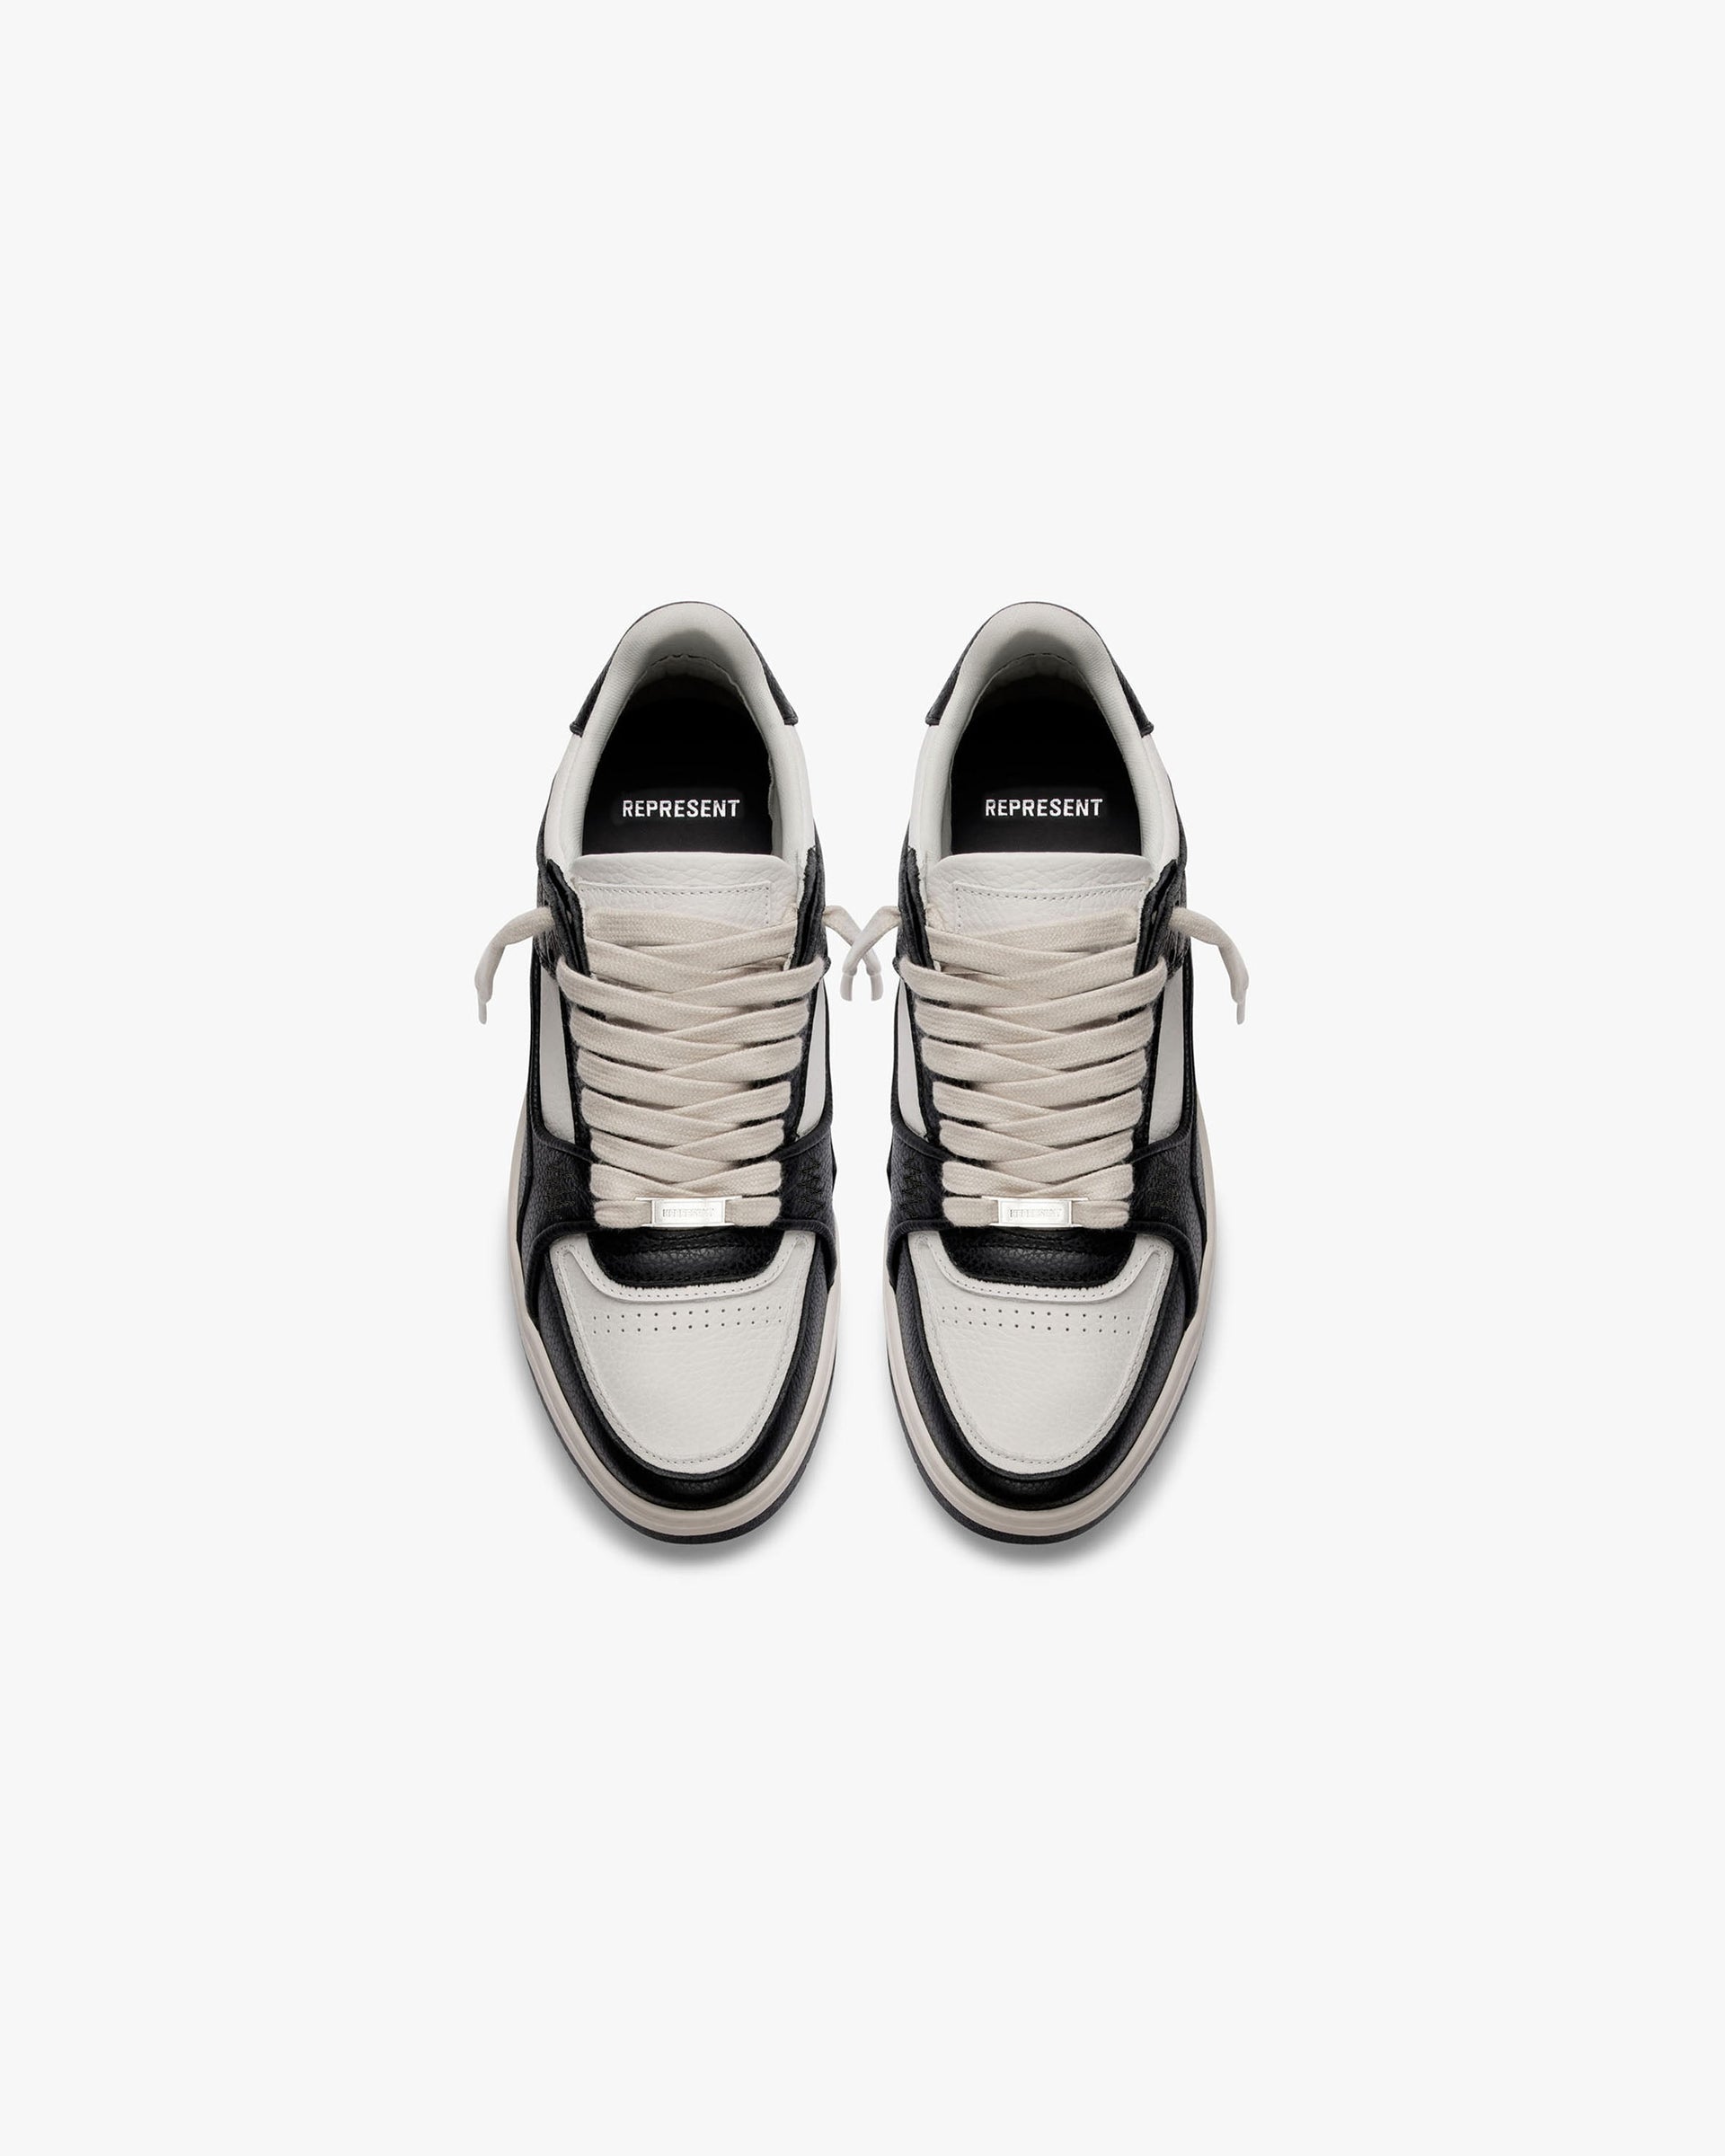 Apex Sneaker | Black/Vintage White | REPRESENT CLO